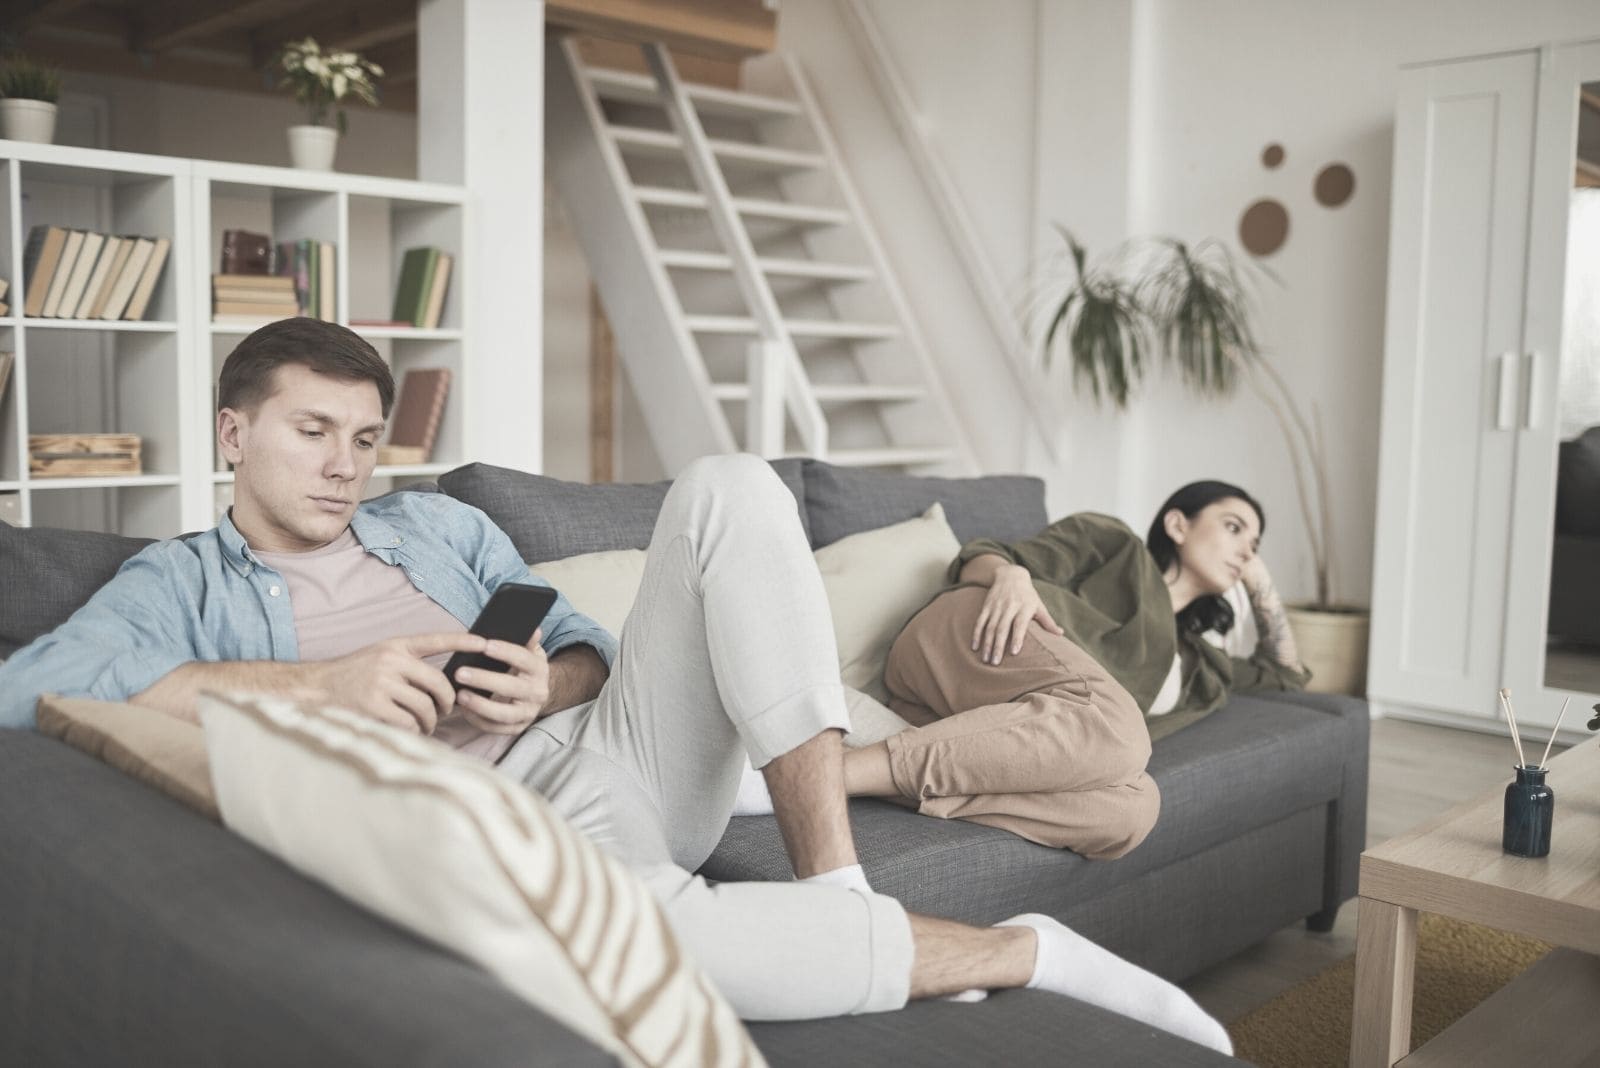 Coppia annoiata a casa che guarda la tv sul divano con l'attenzione sull'uomo impegnato con il suo gadget